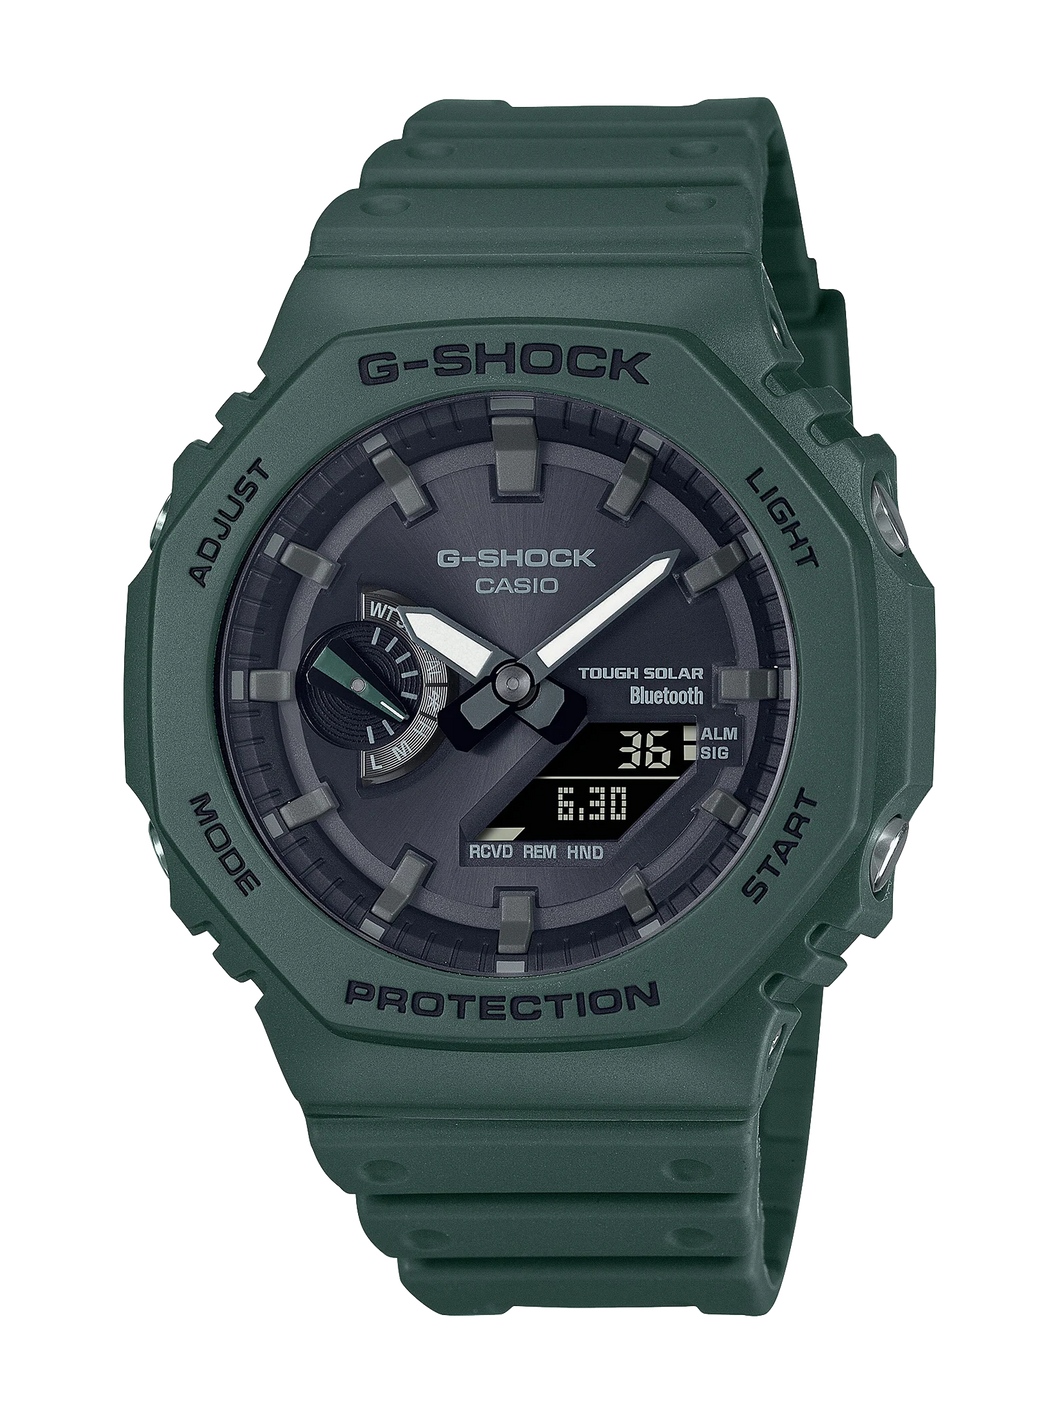 GAB2100-3A G-SHOCK Bluetooth Tough Solar Watch